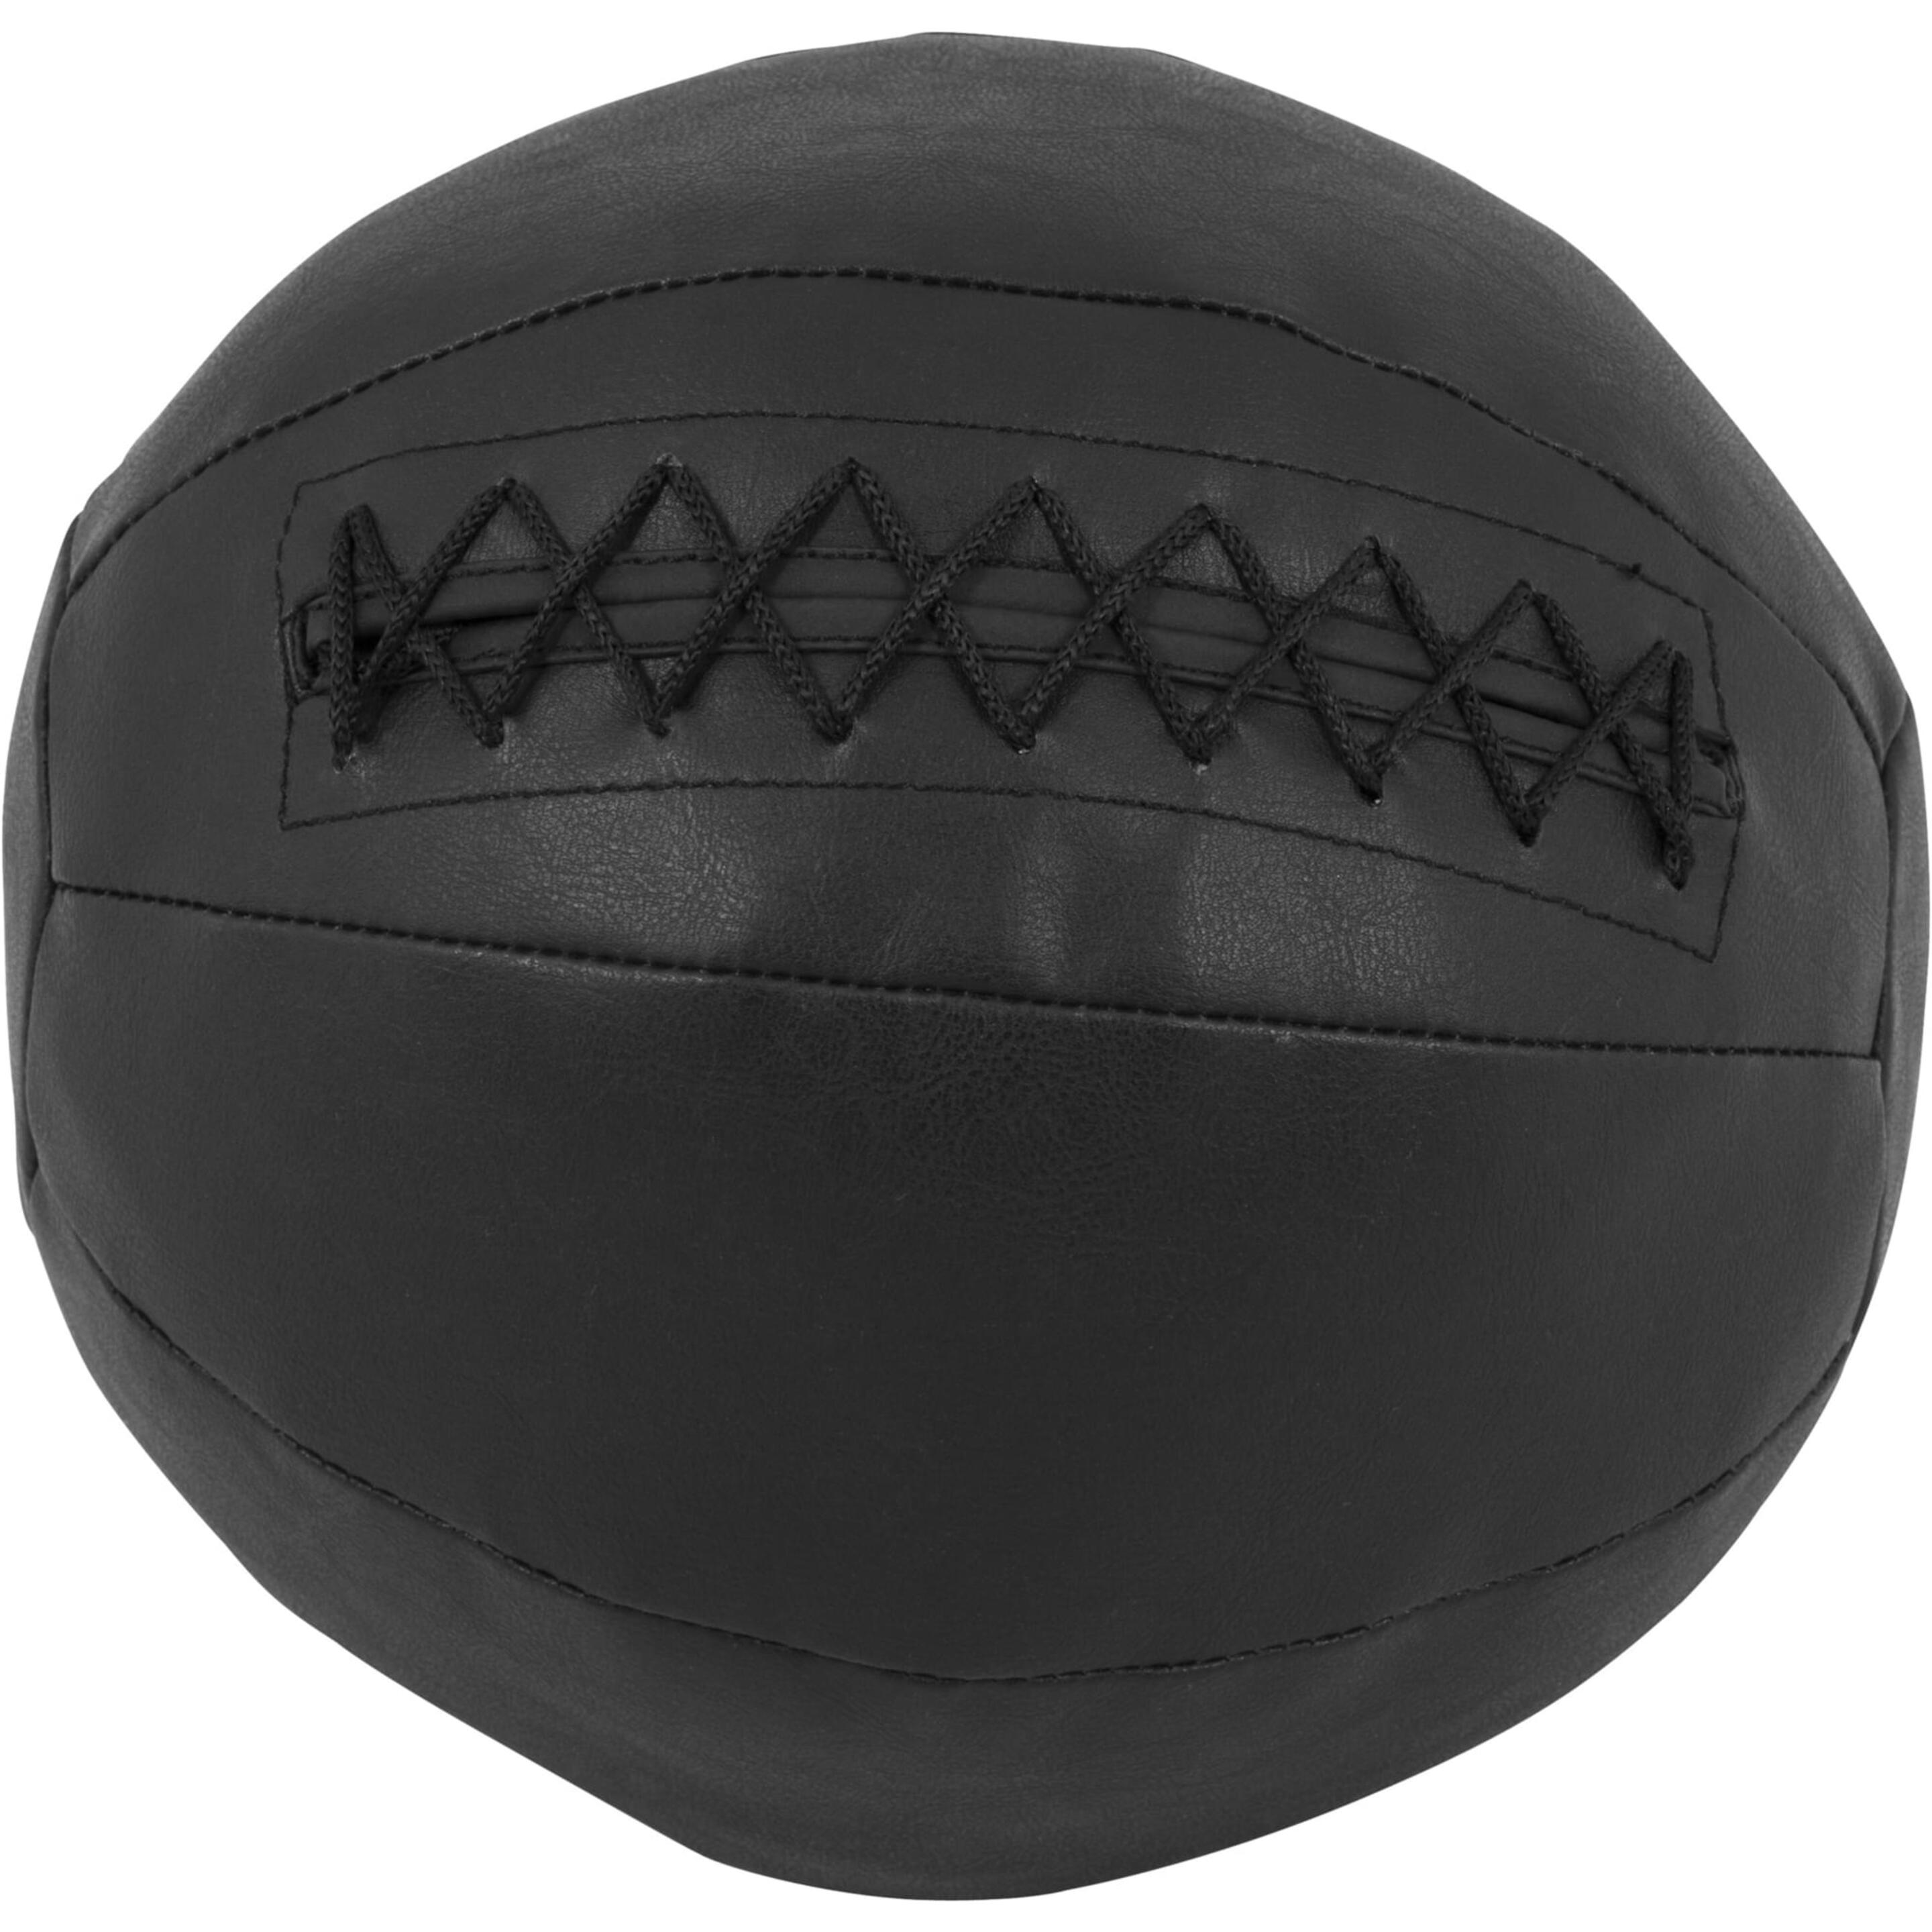 Balón Medicinal De Cuero 5 Kg Gorilla Sports - Negro  MKP